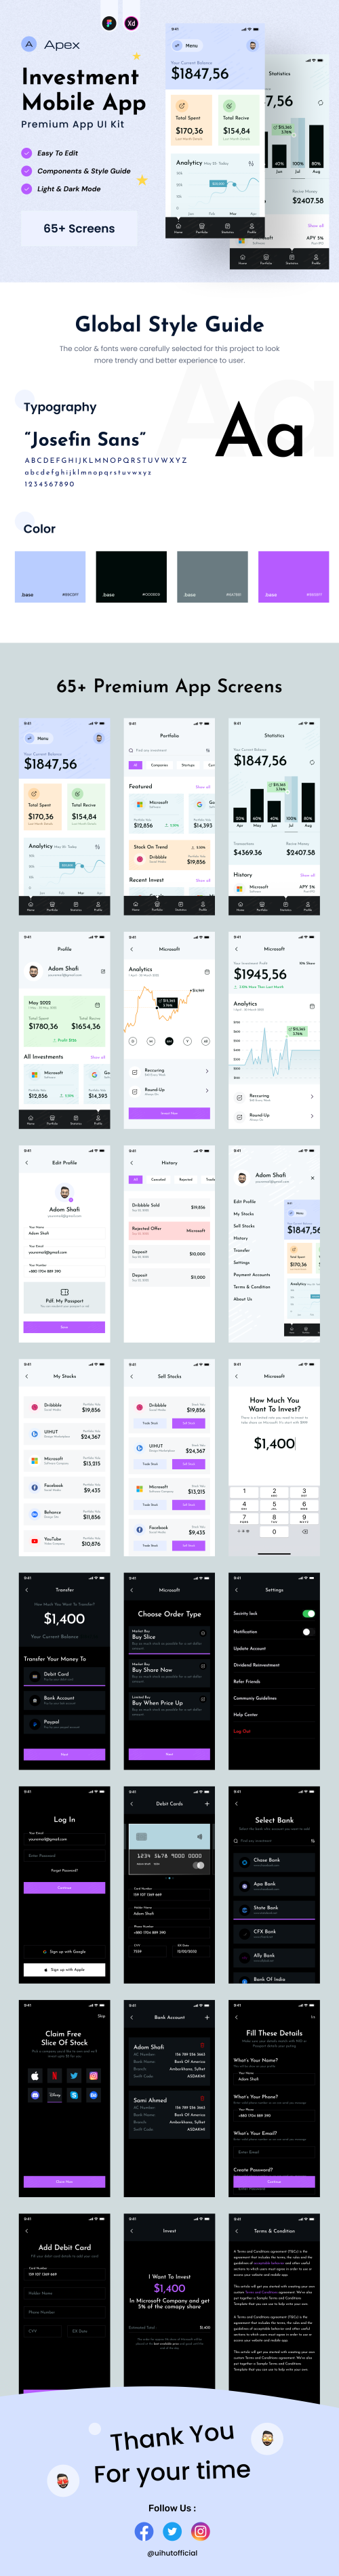 UIHut - Investment Mobile App UI Kit - 20304